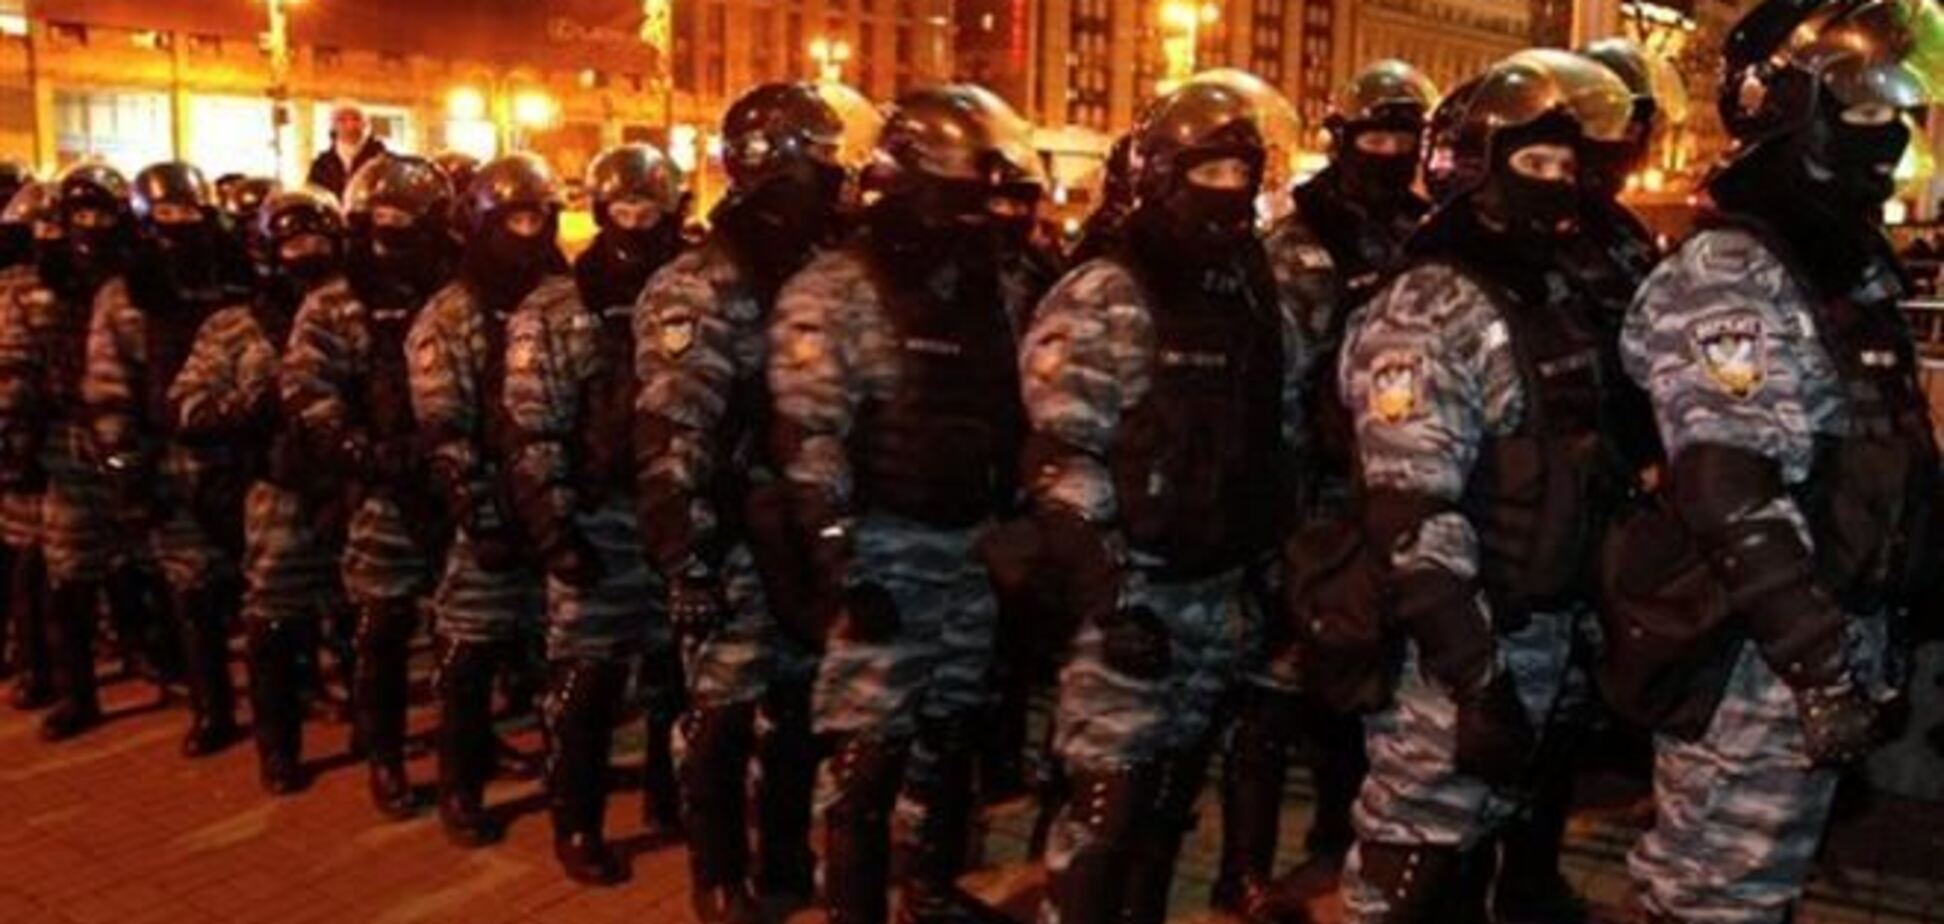 Регионал считает глупейшей ошибкой разгон Евромайдана